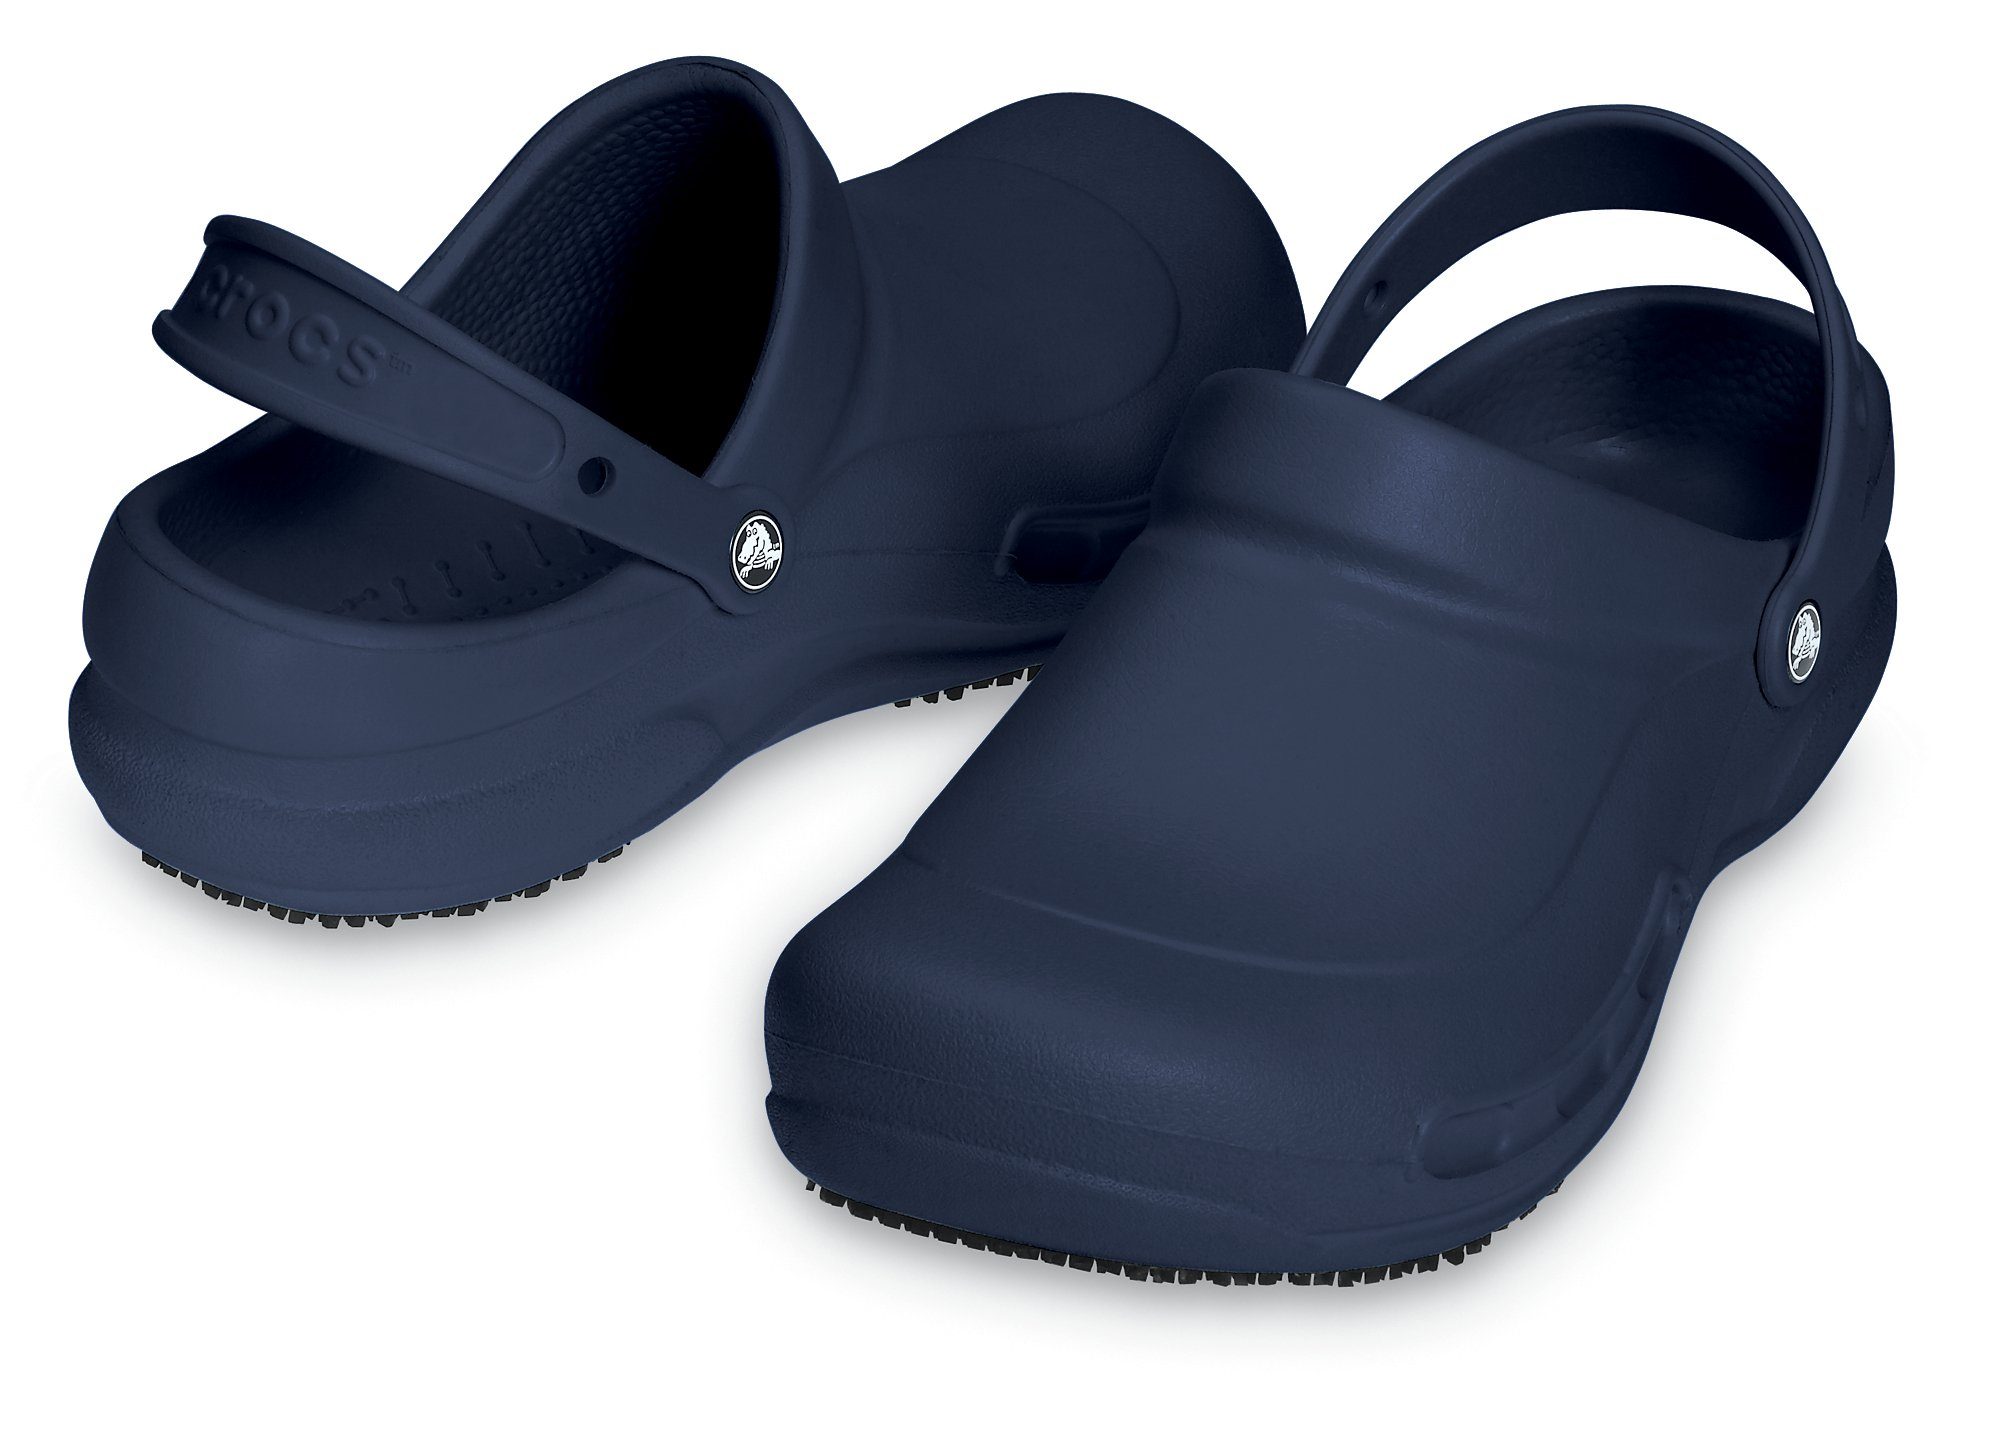 Schuhe Sicherheitsschuhe Crocs Bistro Speziell für Mitarbeiter im Hotel-, Gaststätten- und Gesundheitsbereich Clog mit geschloss